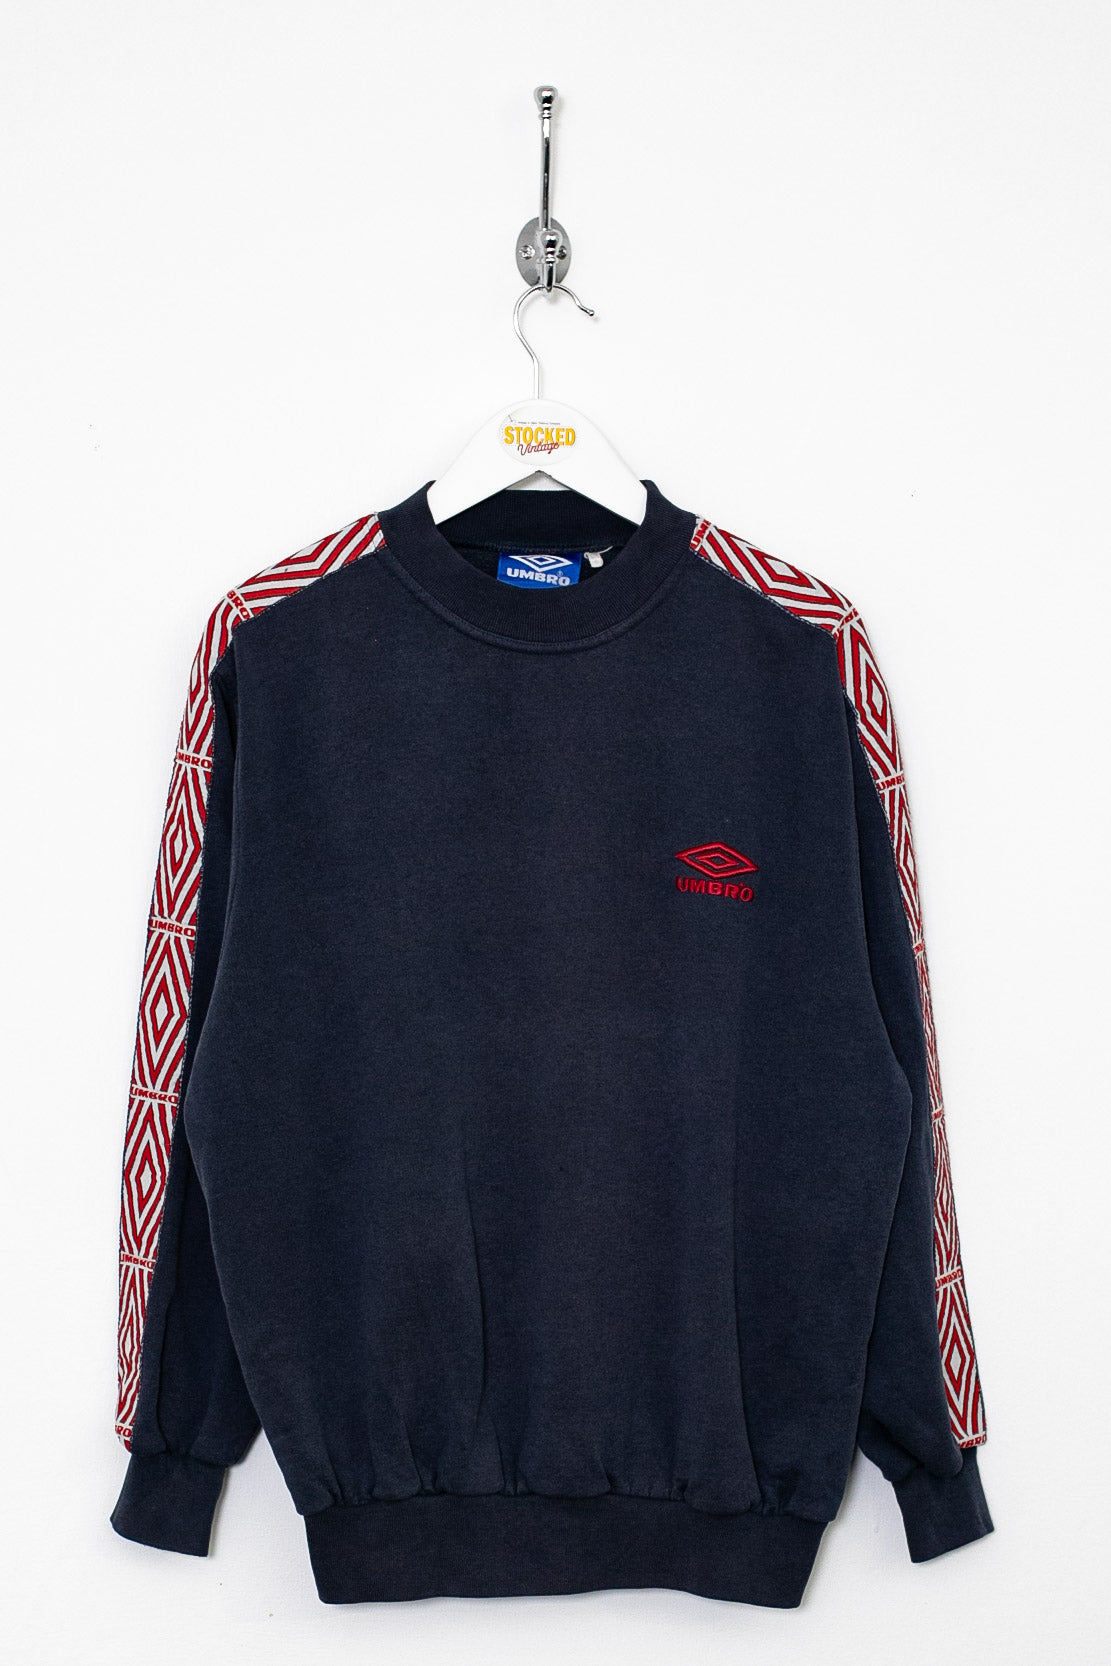 90s Umbro Sweatshirt (S)